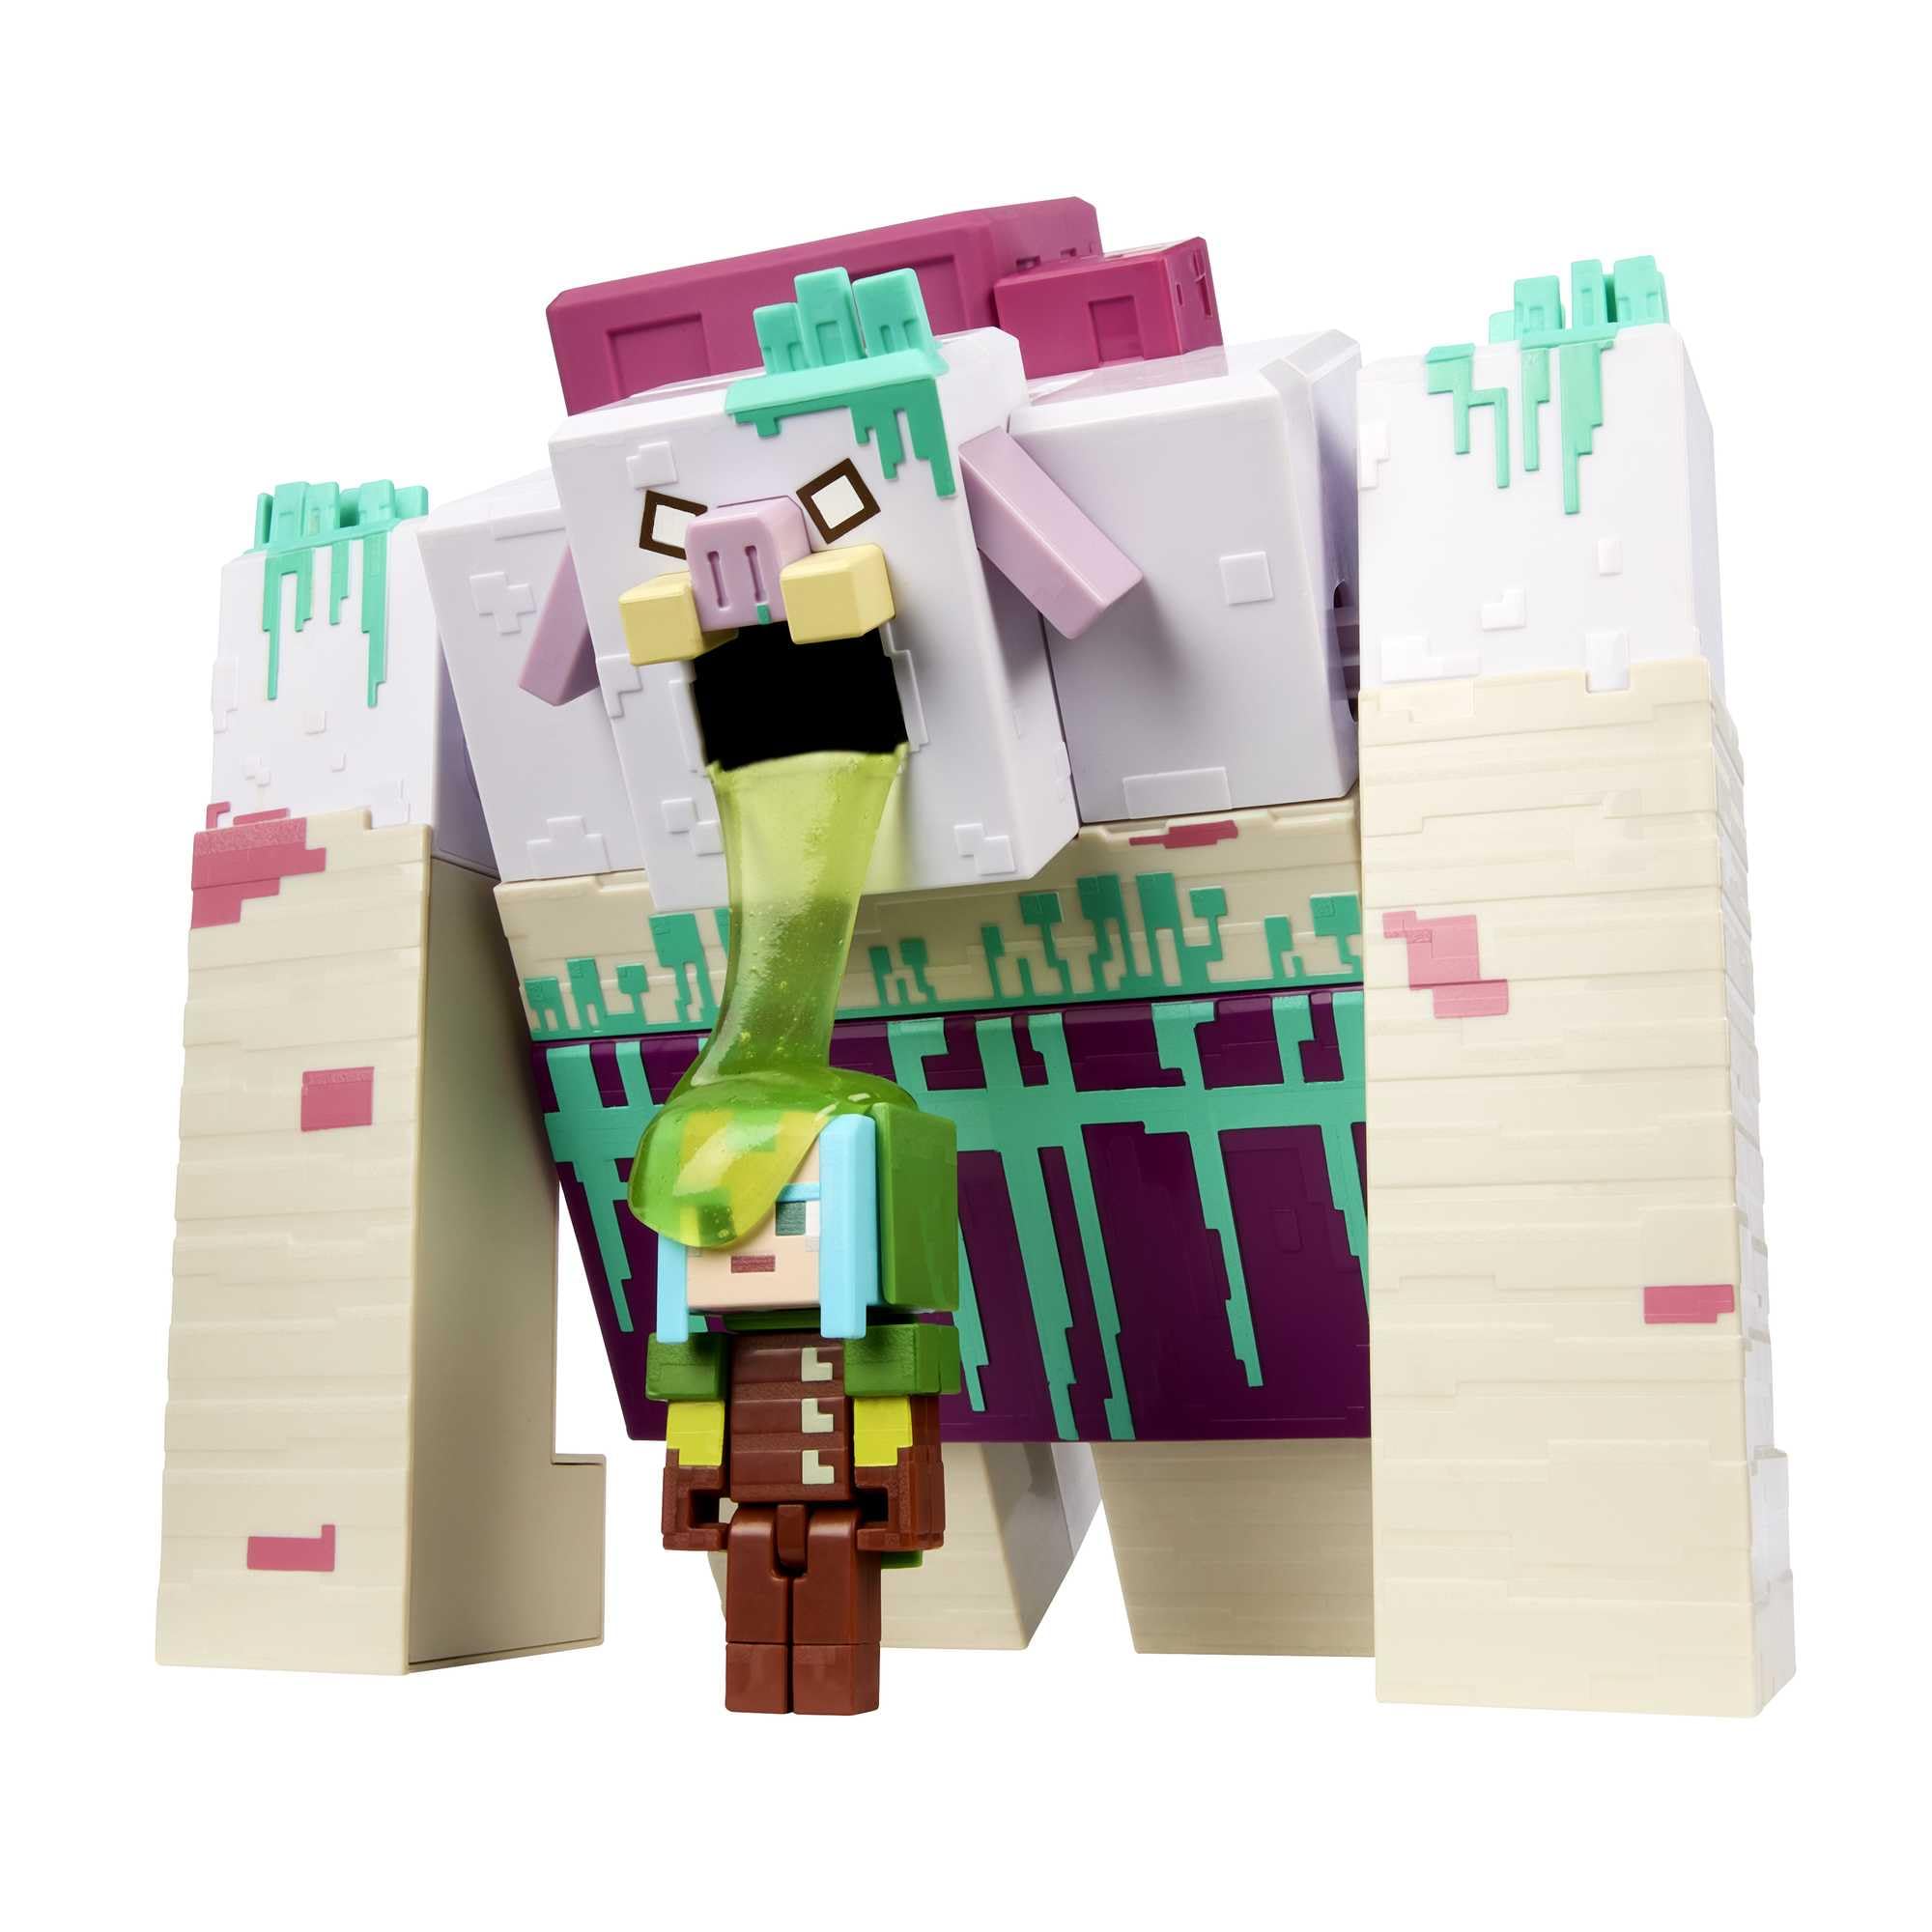 Mattel Minecraft Legends Action Figures: 10" Devourer Action Figure w/ Slime + 3.25" Ranger Figure $9.60 + Free Shipping w/ Prime or on $35+